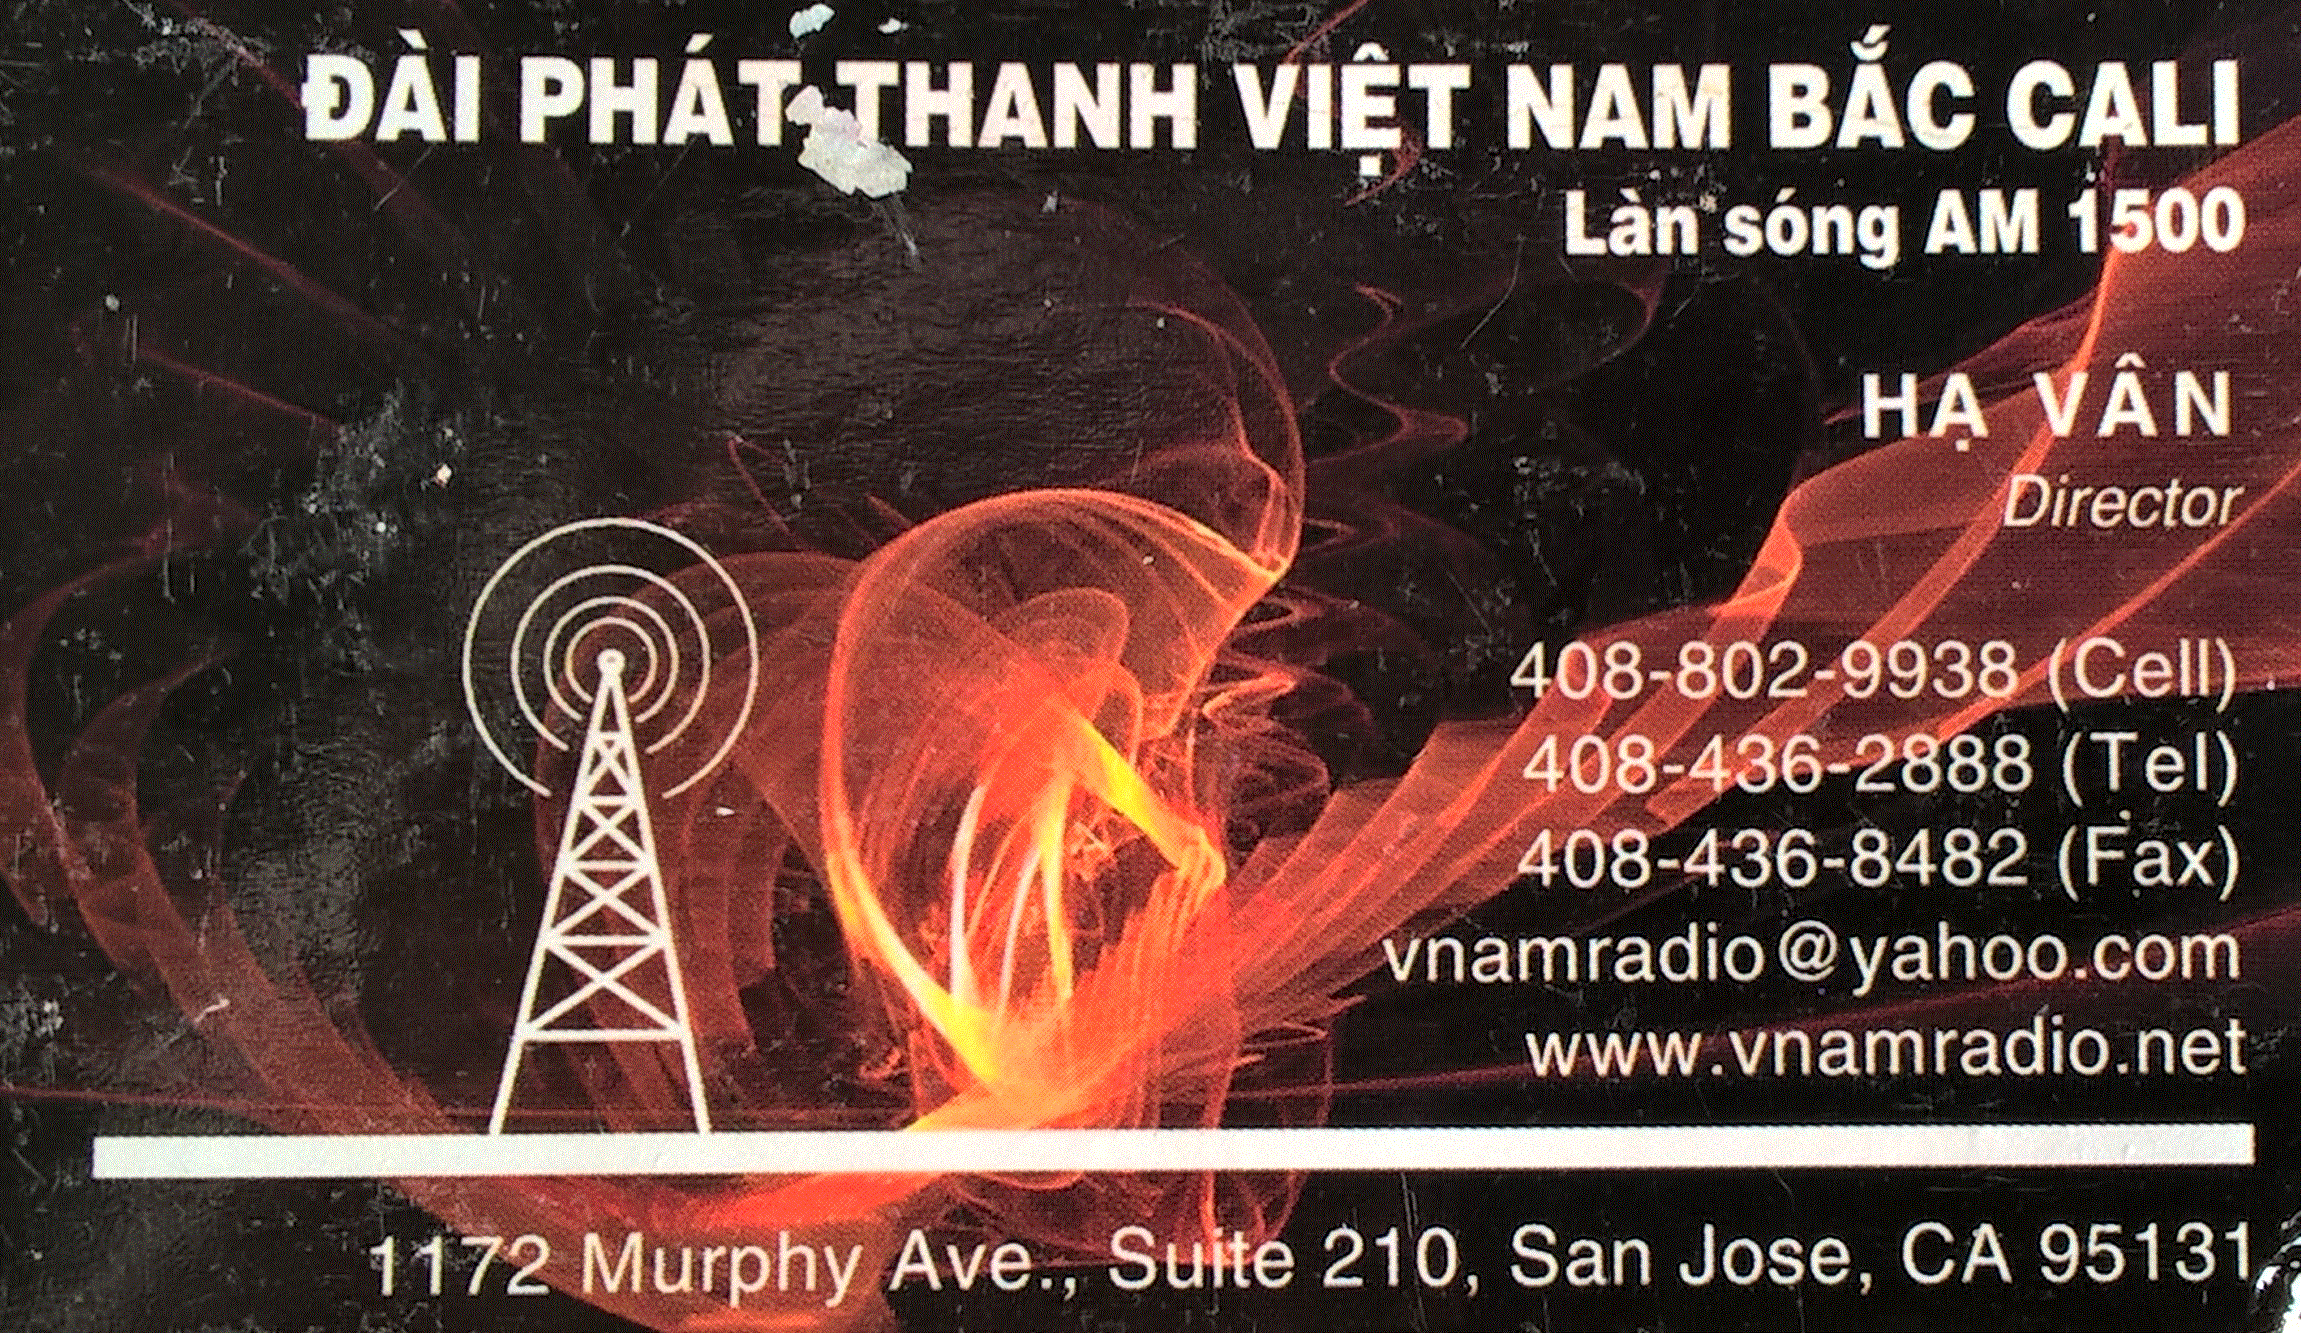 Việt Nam Bắc Cali Radio